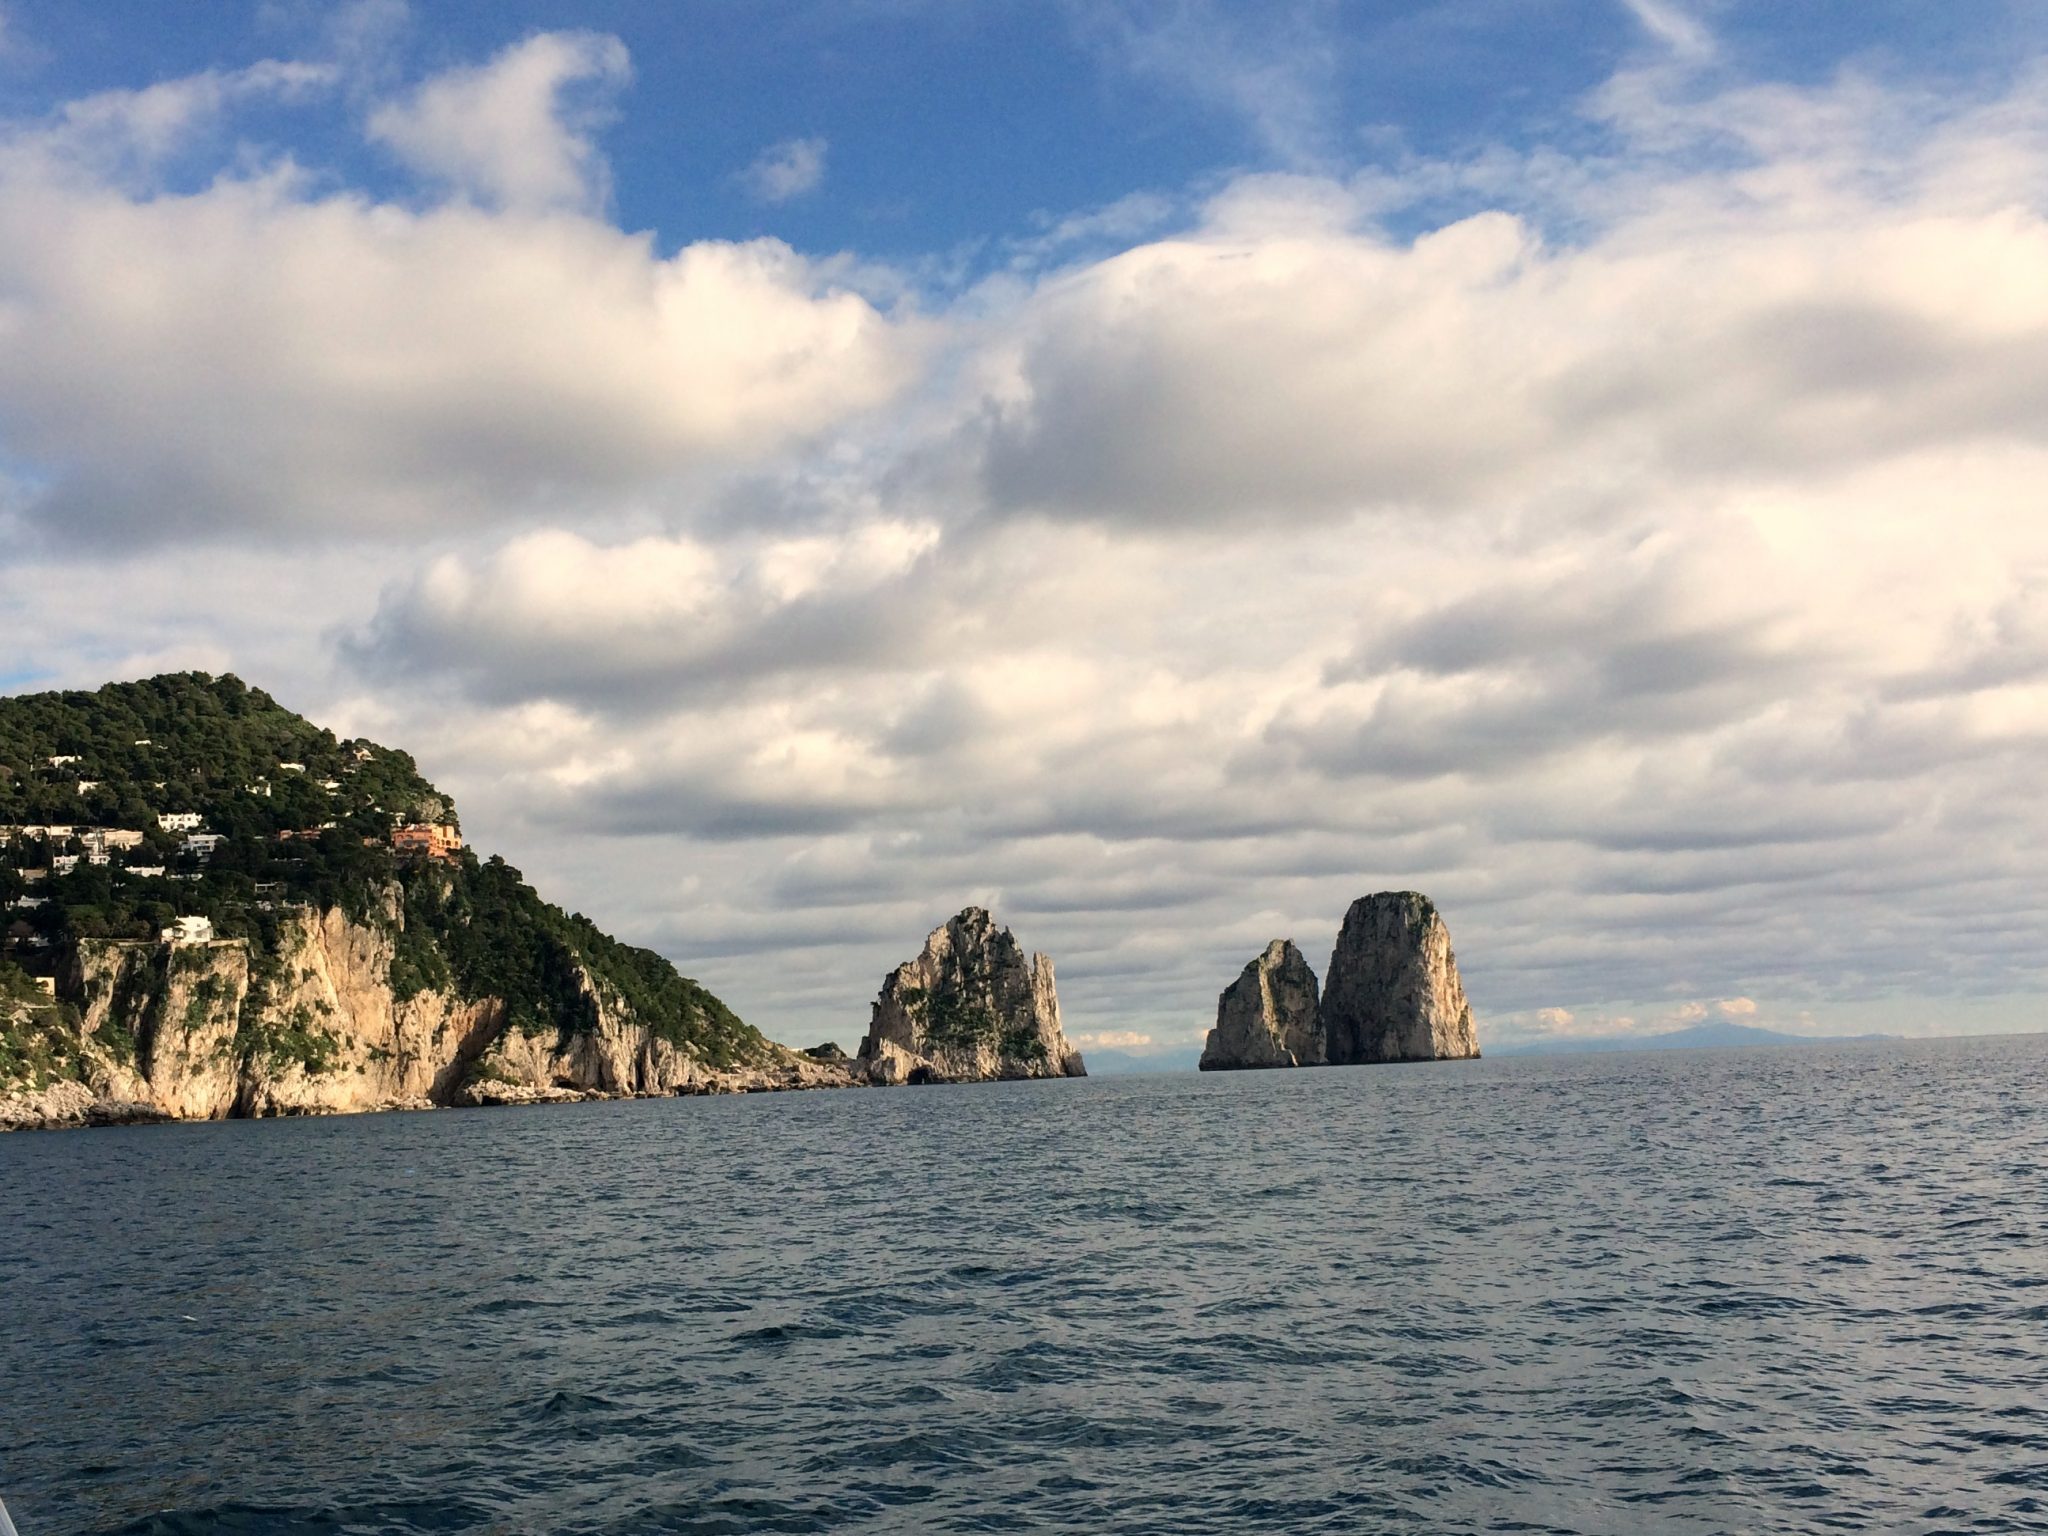 Capodanno 2014: Napoli e costiera amalfitana